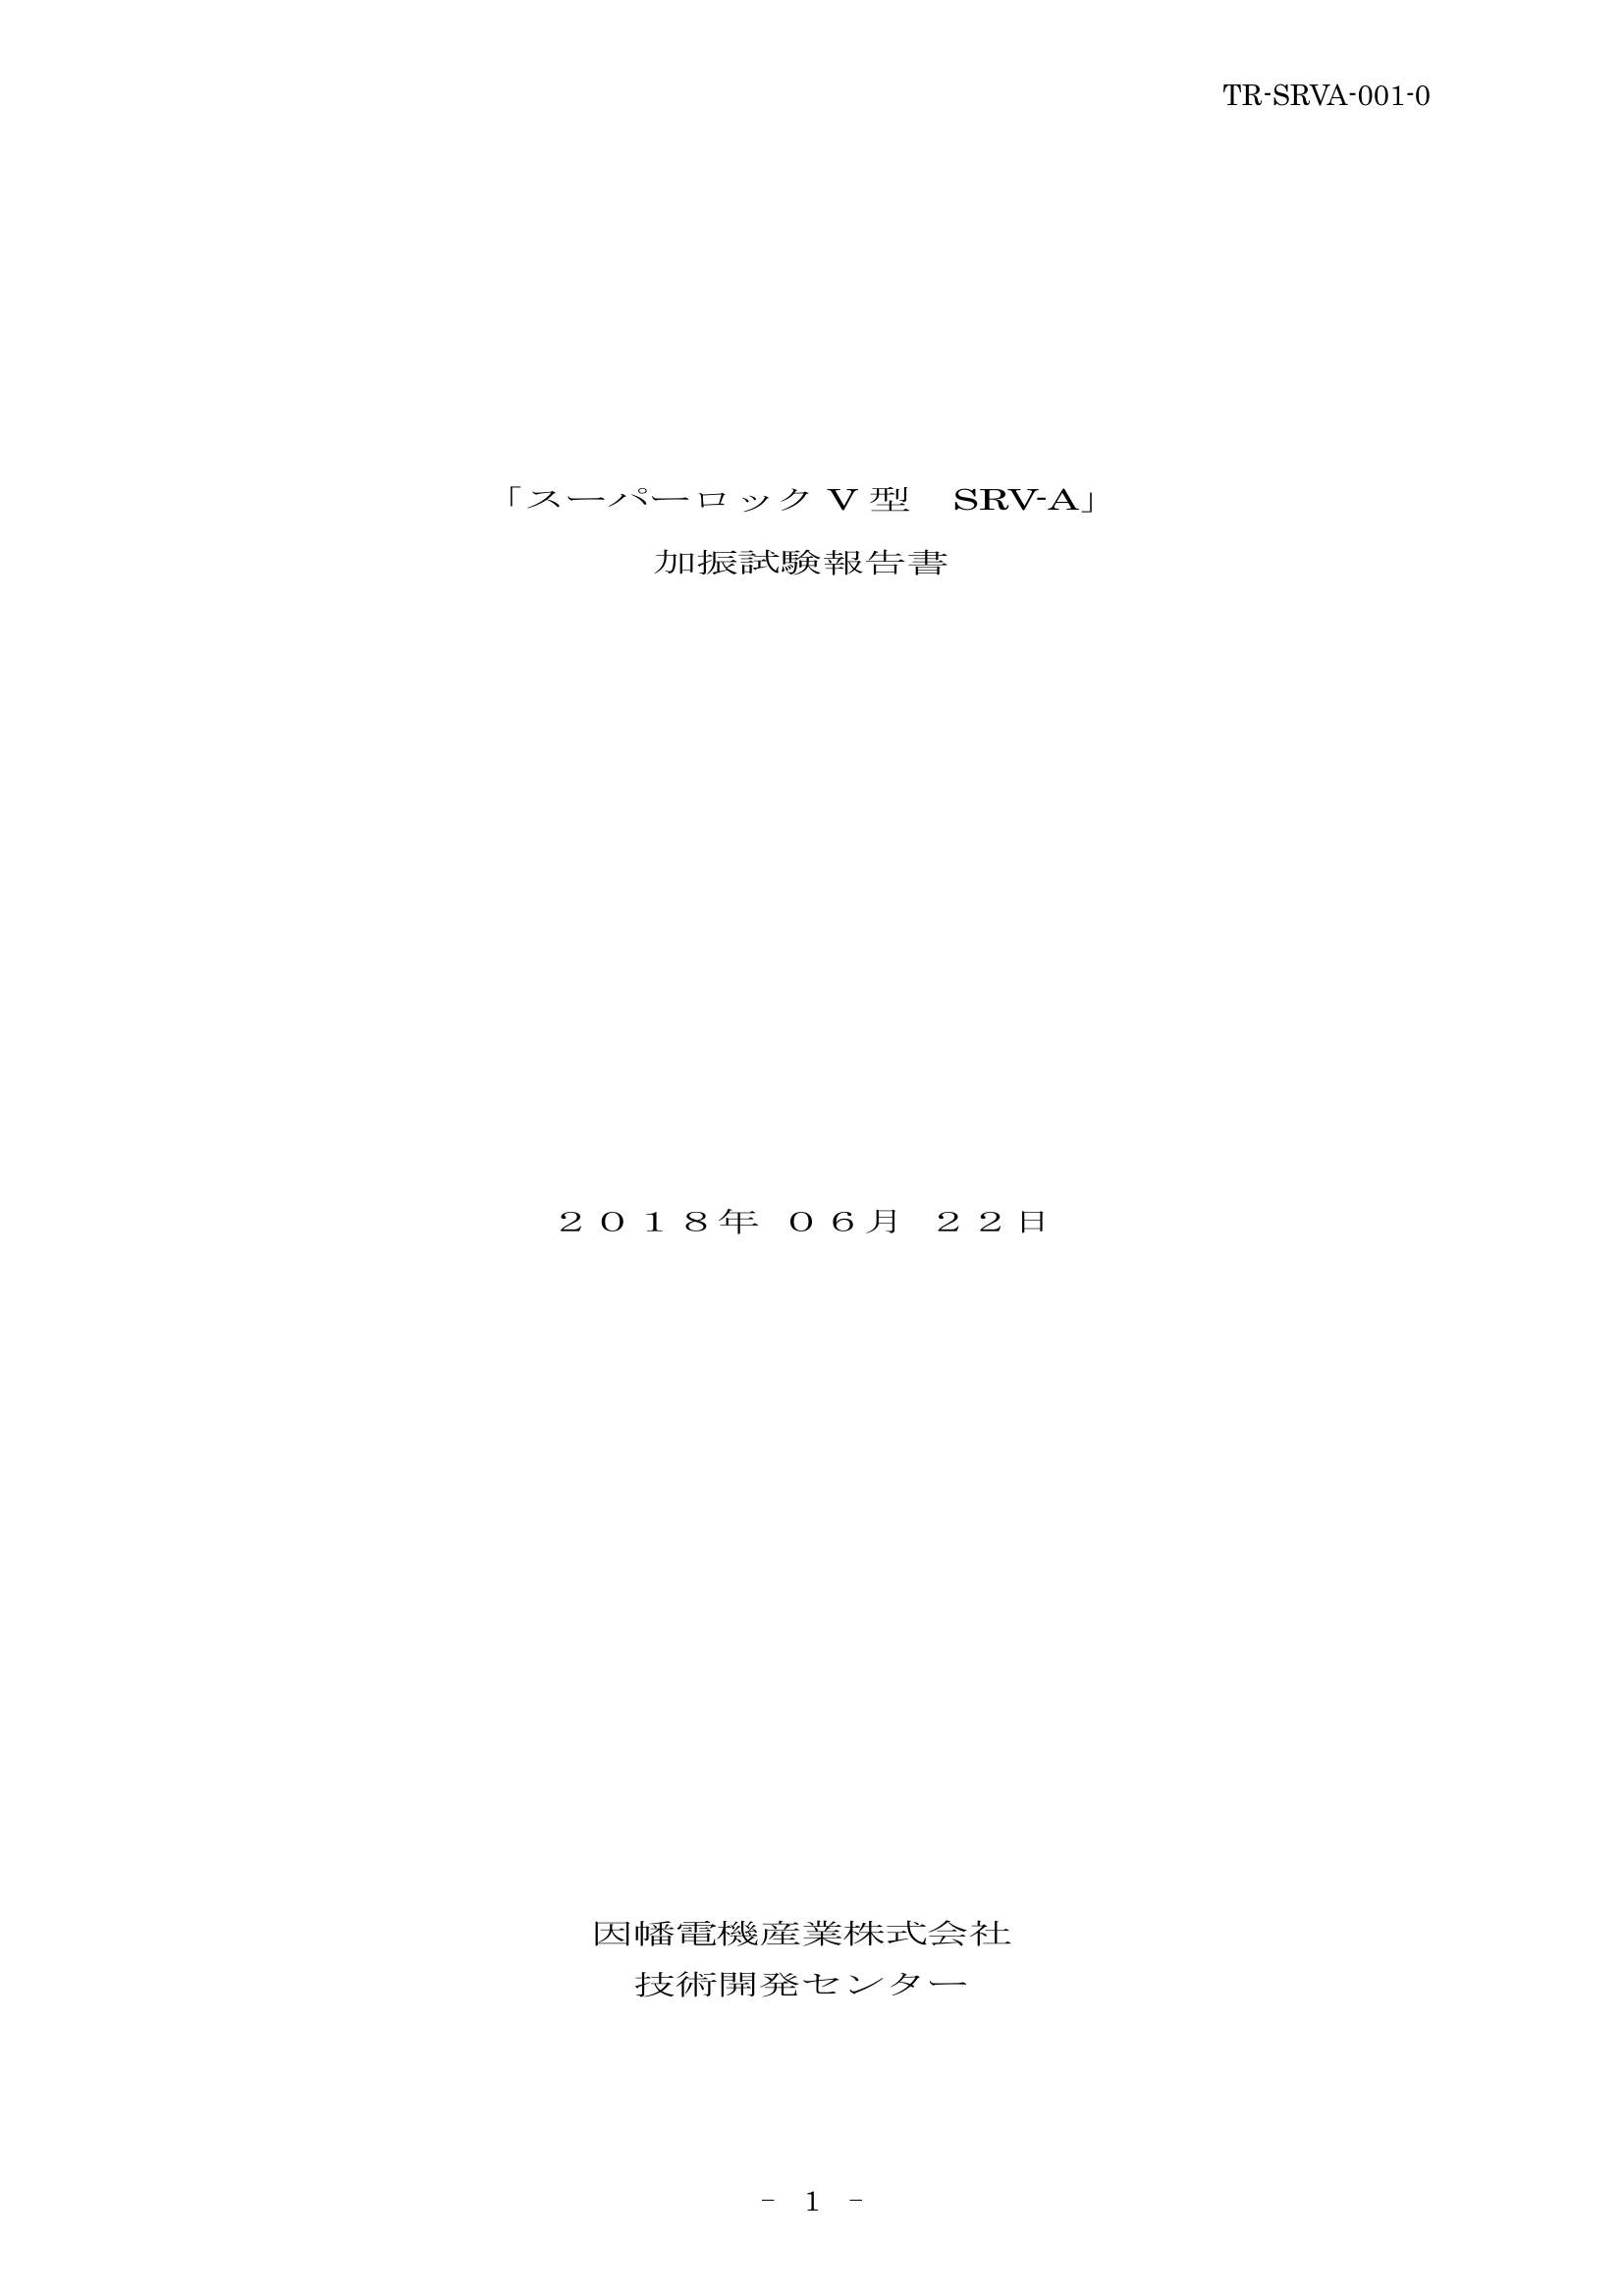 SRV-A_試験報告書_20180622.pdf